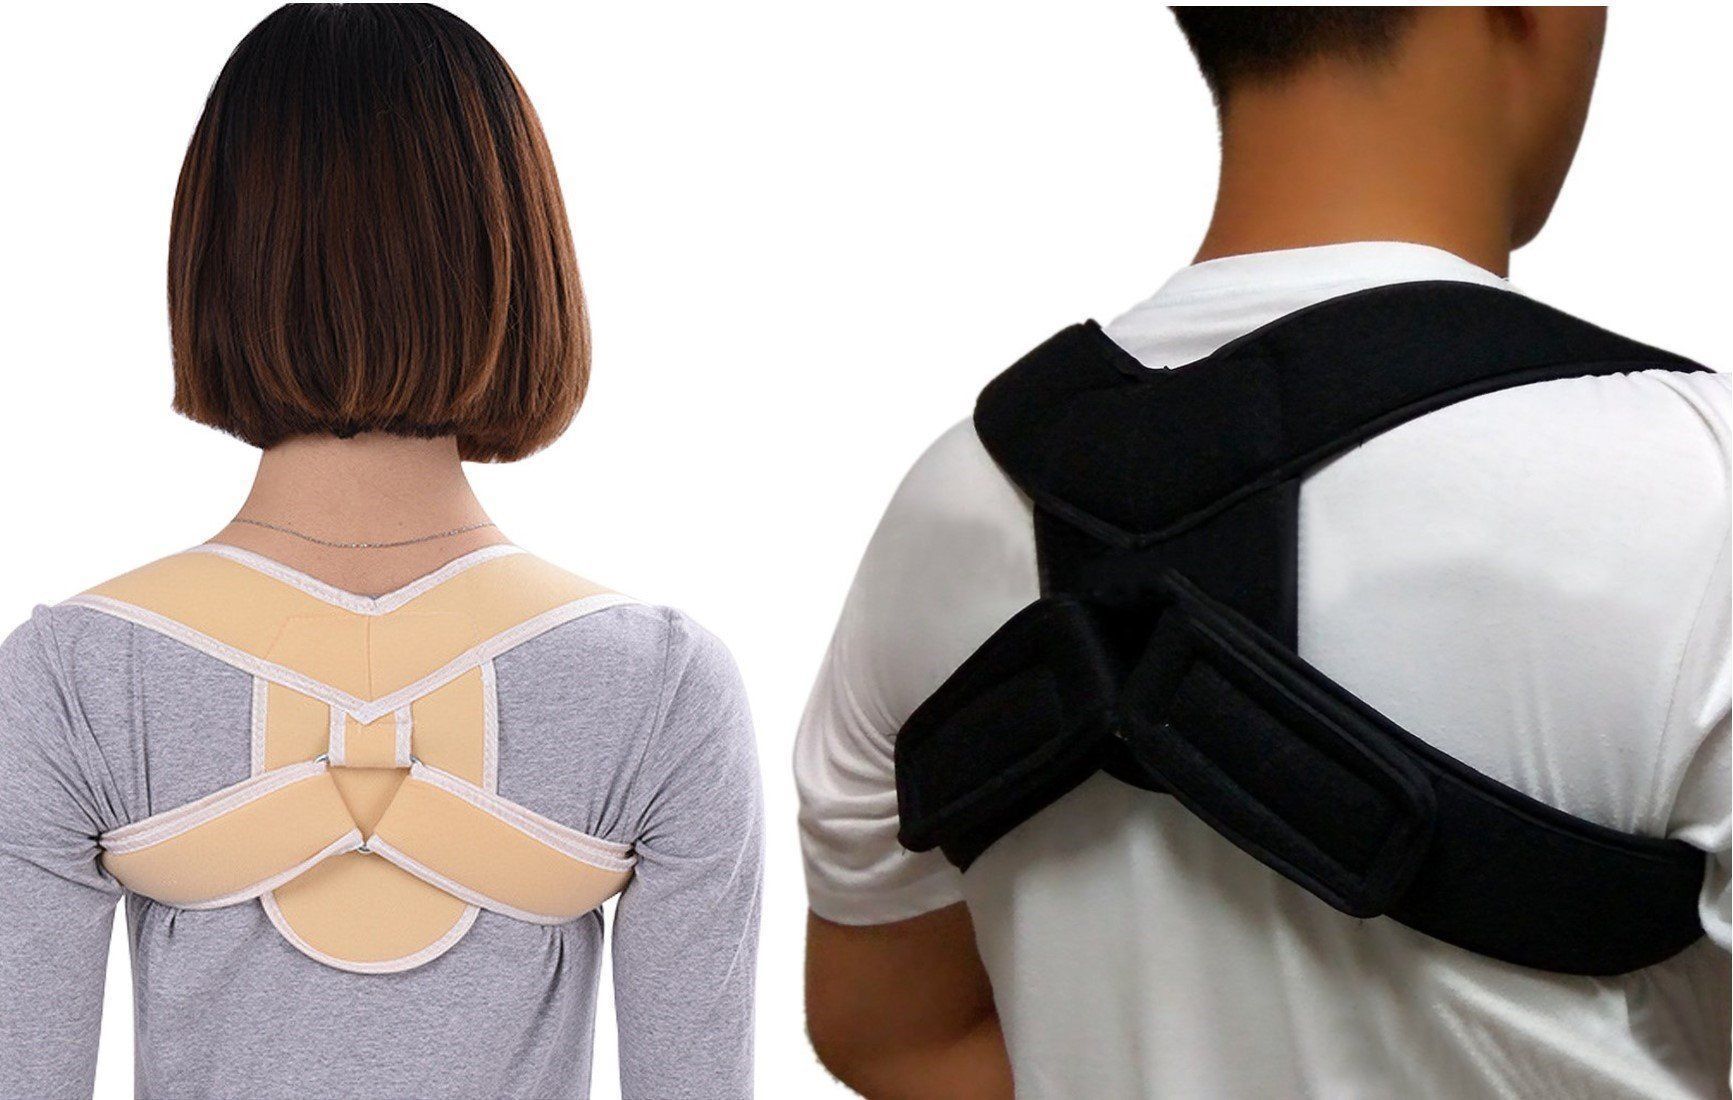 Posture Back Brace Posture Correction for Shoulders